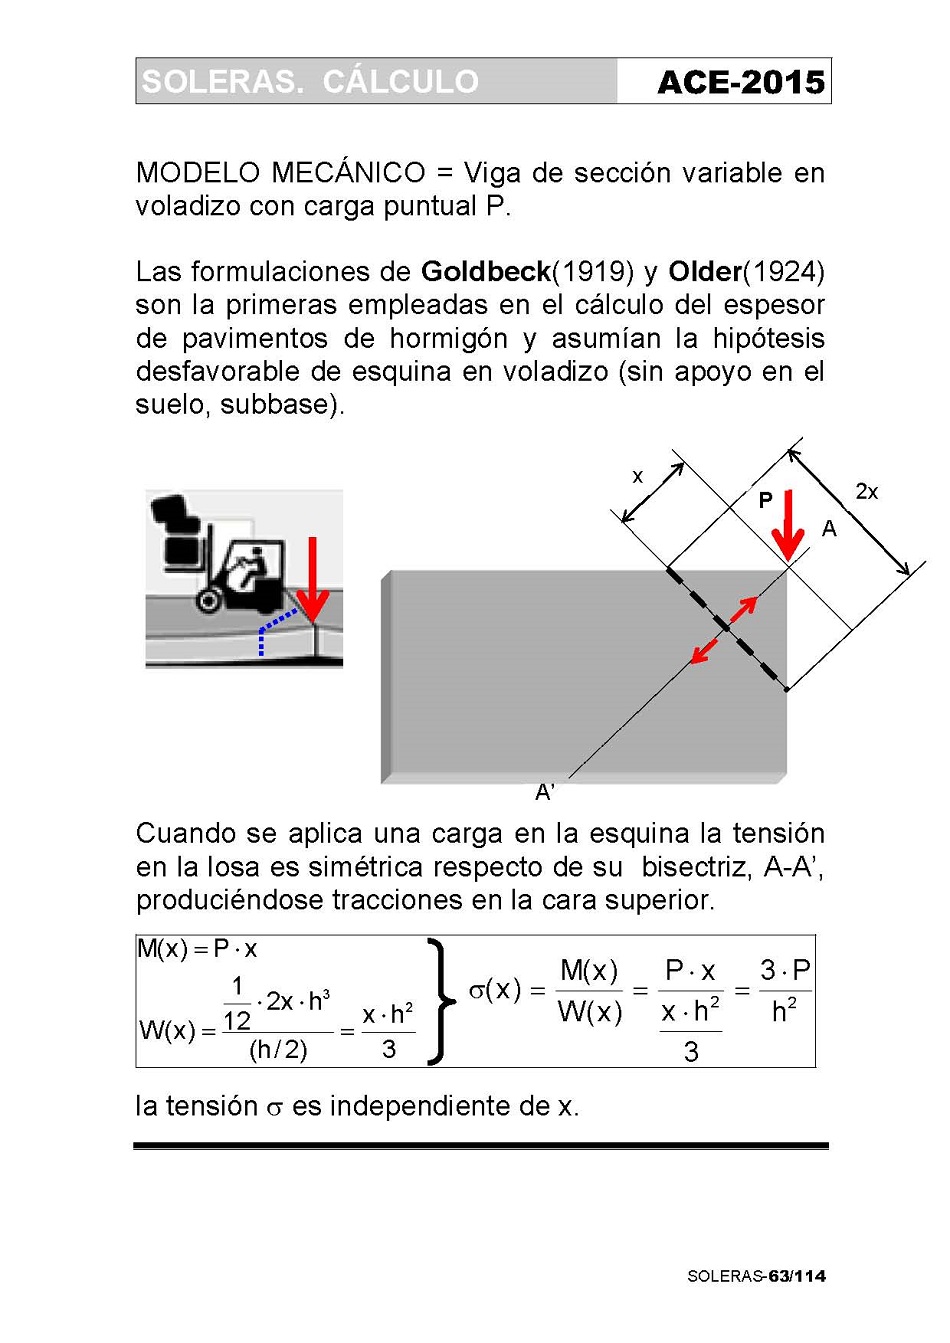 Cálculo de Soleras de Hormigón. Página 63